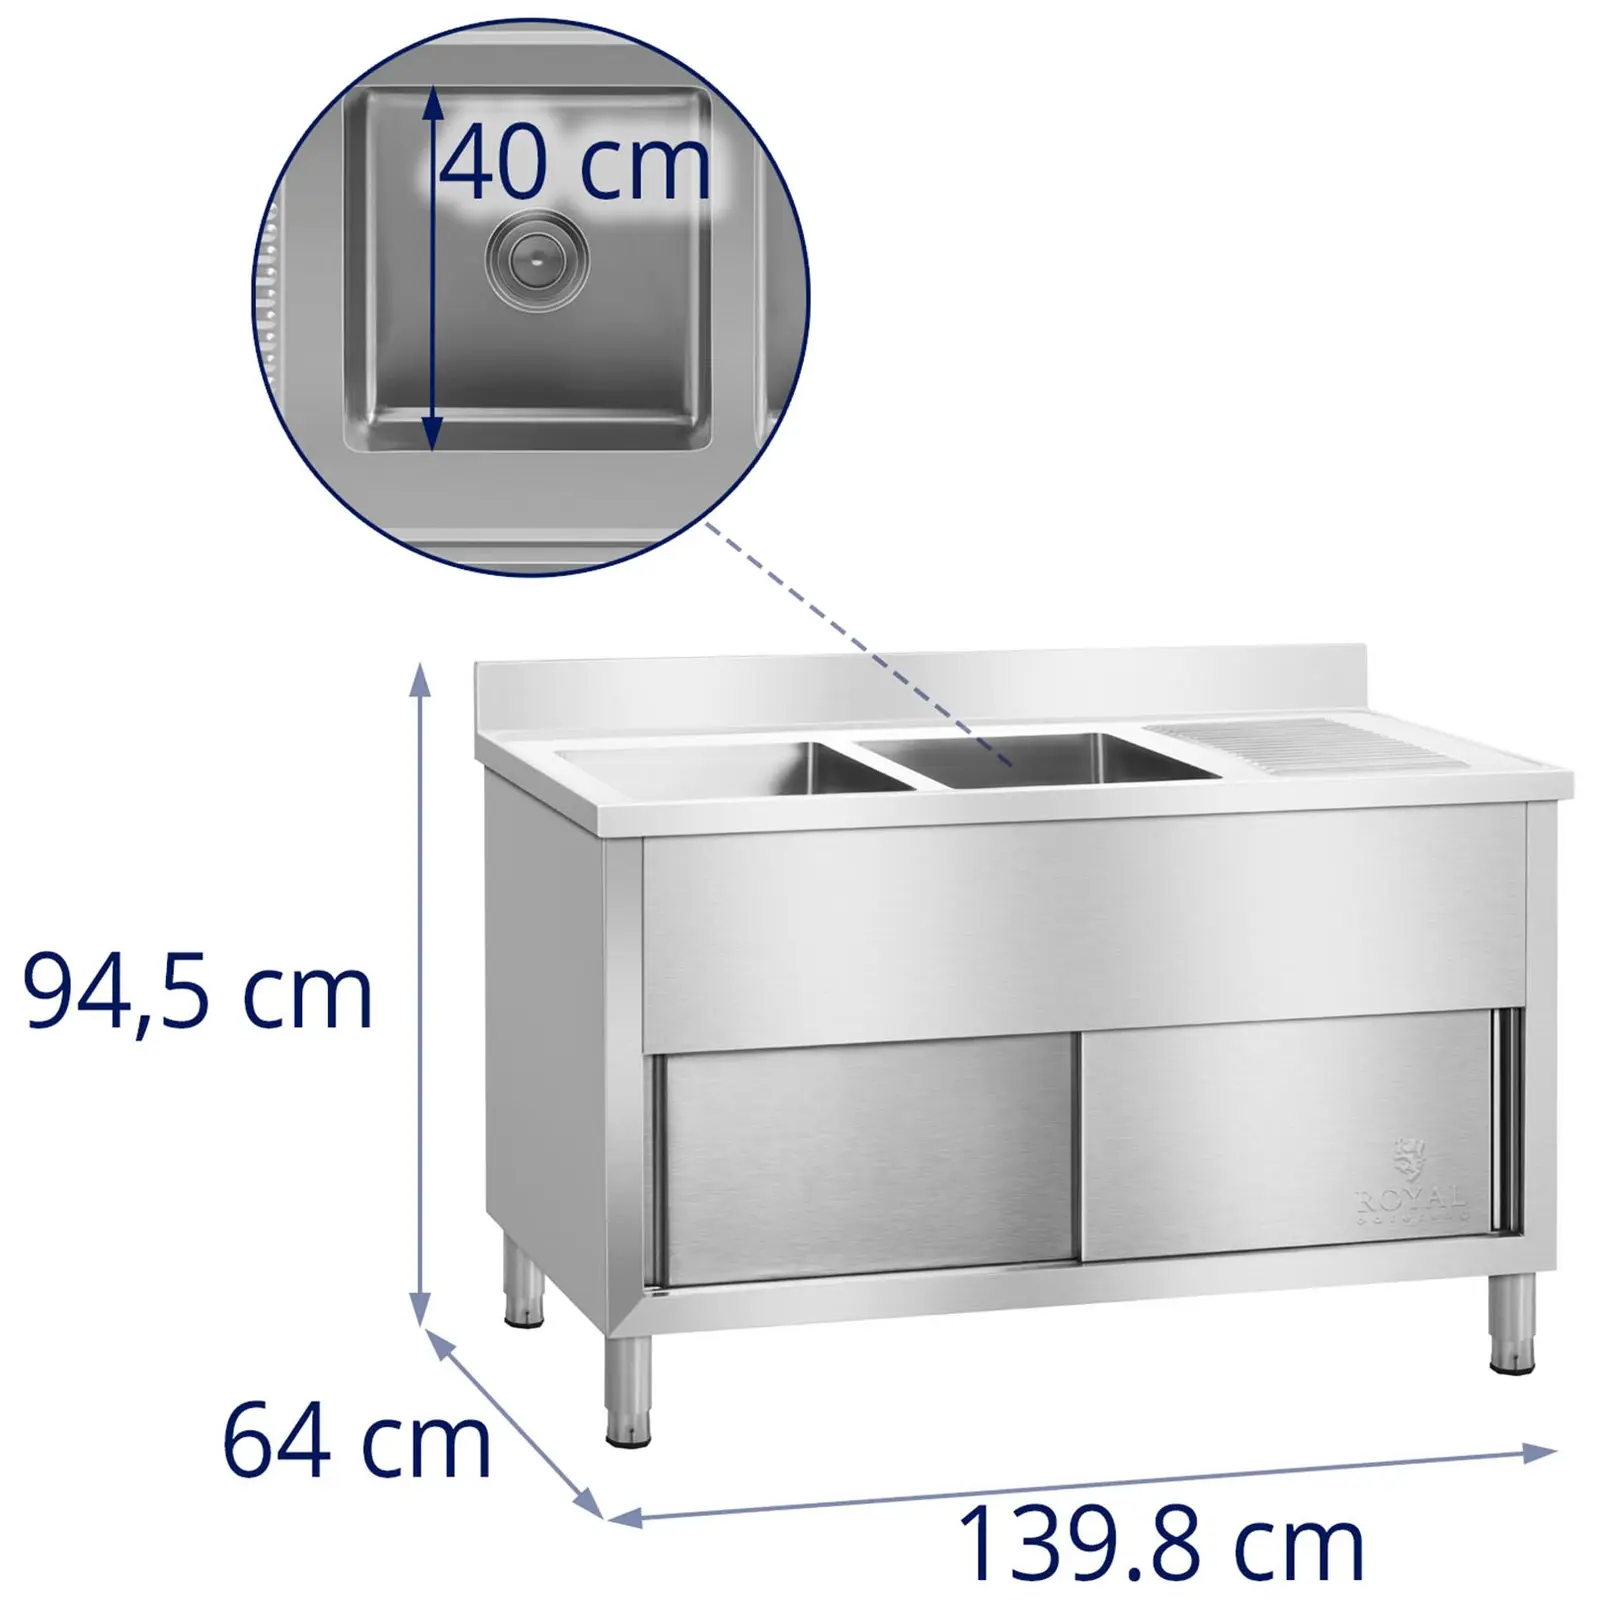 Dobbel kjøkkenvask - 140 cm